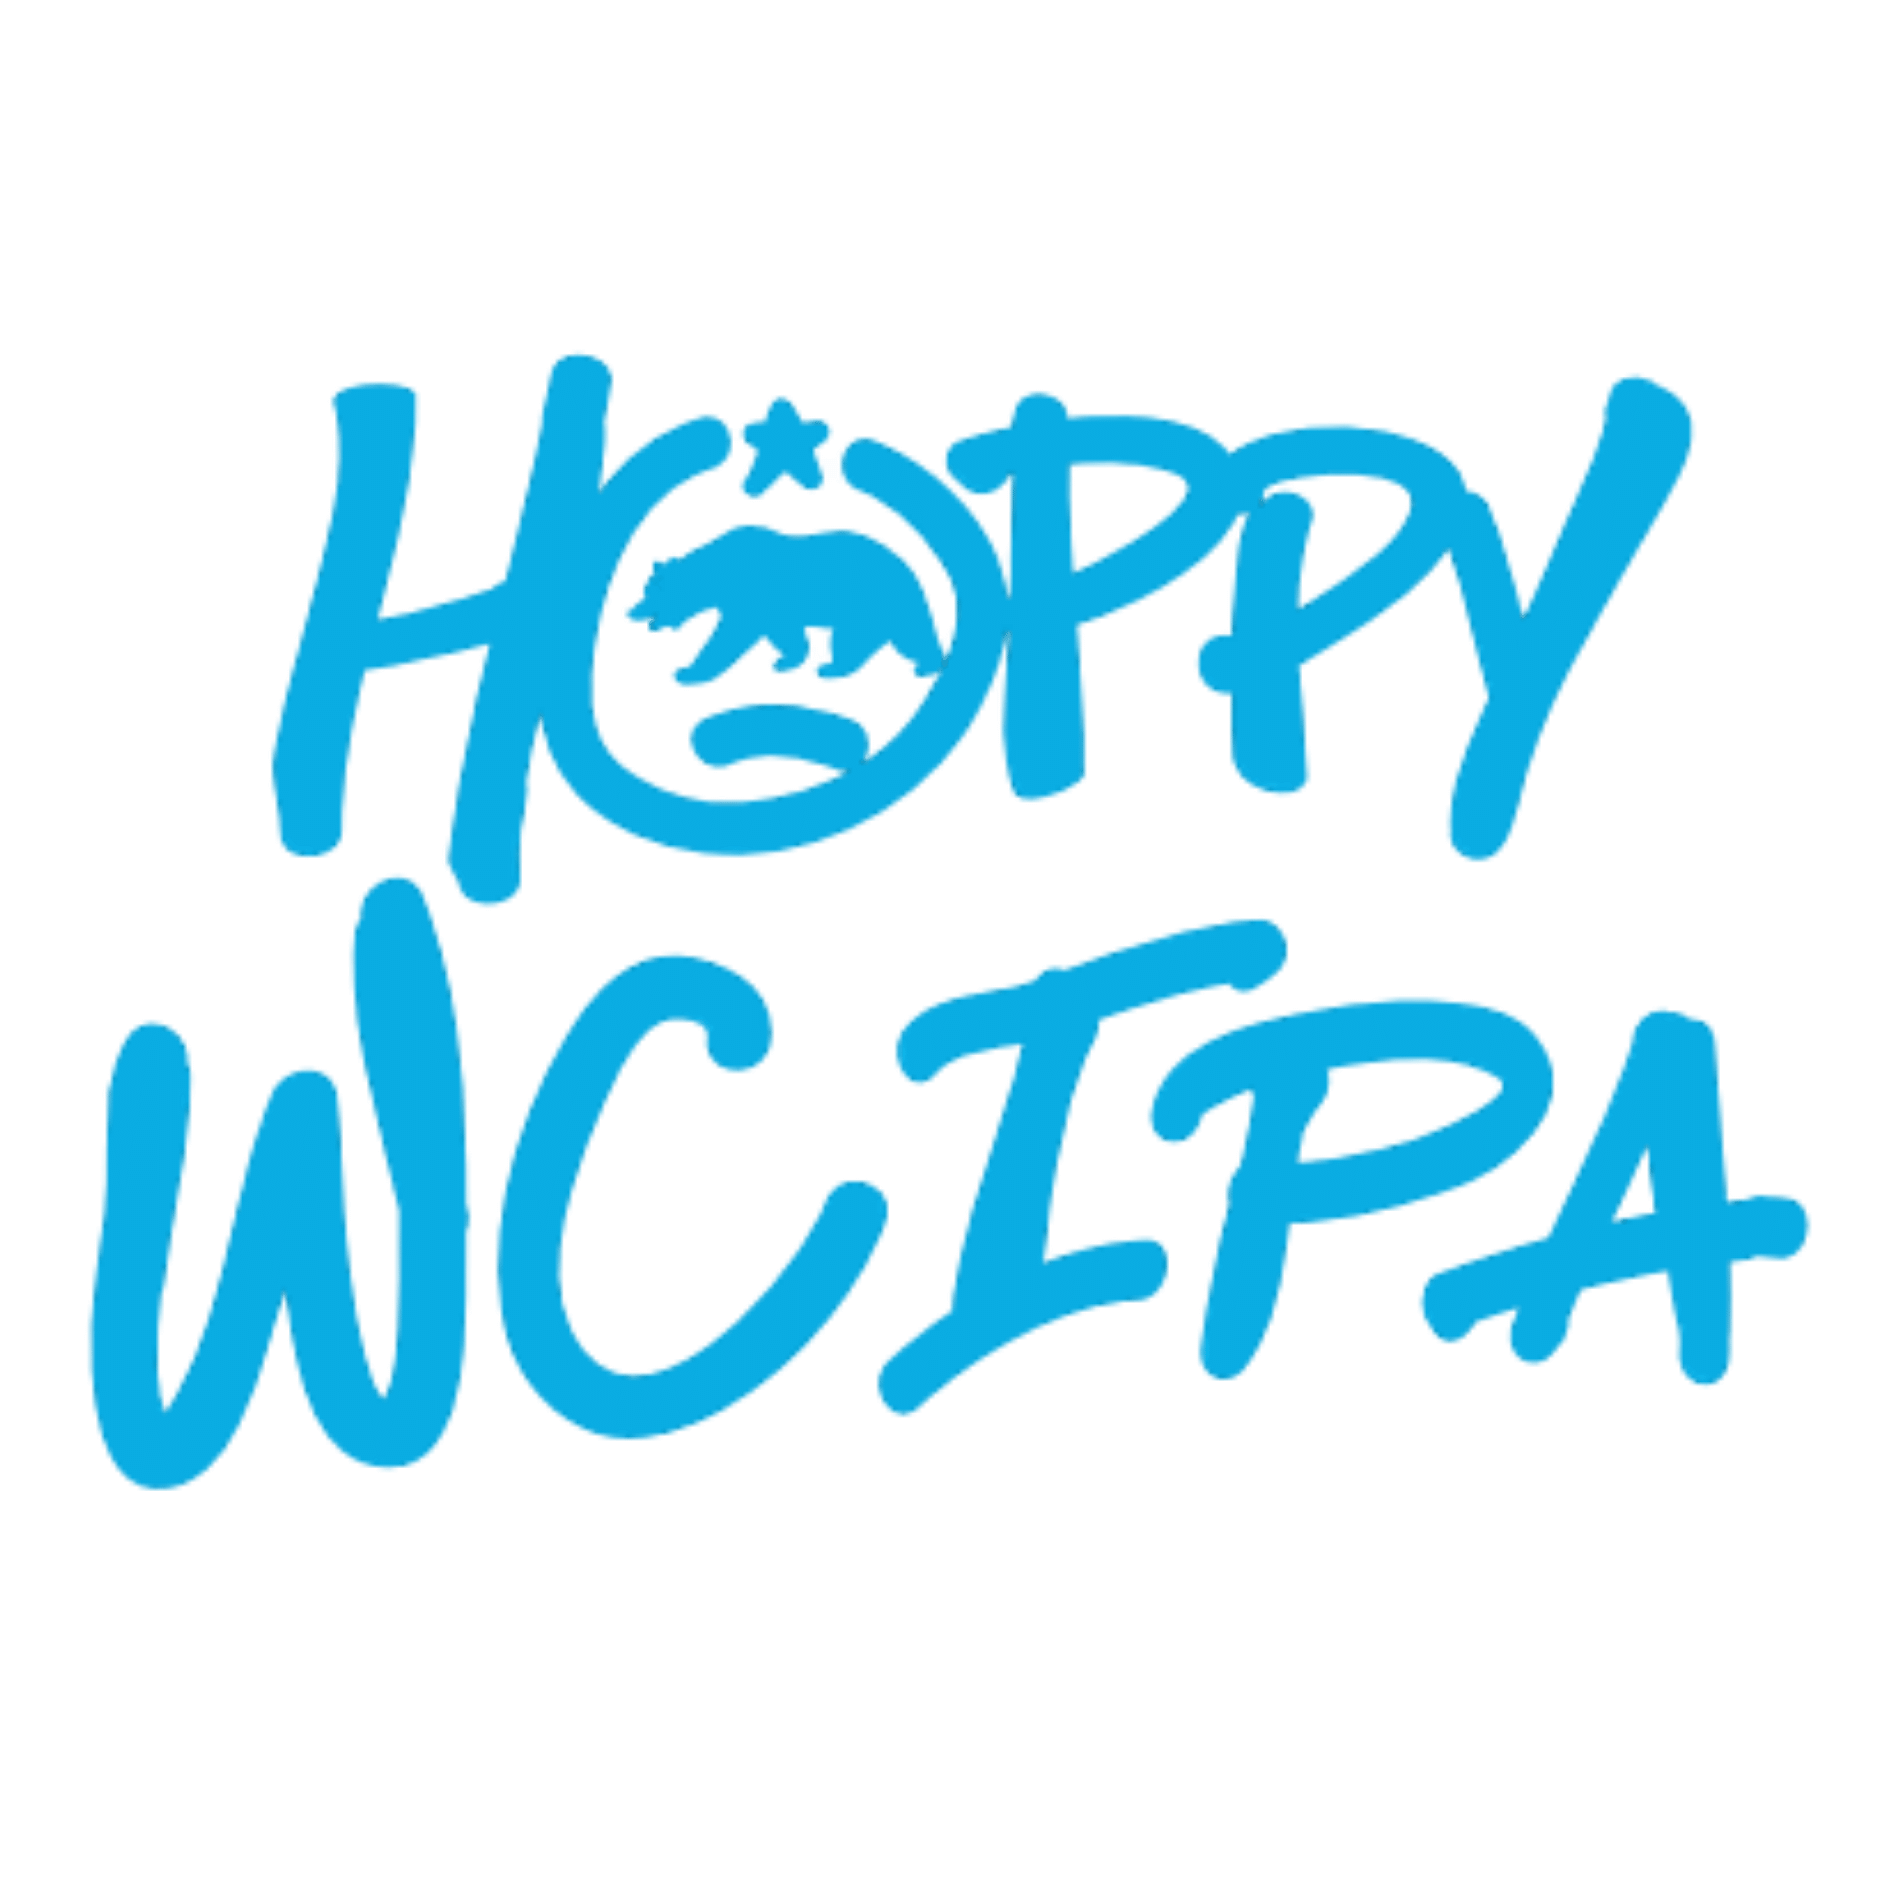 Hop For fun - Hoppy WC Ipa